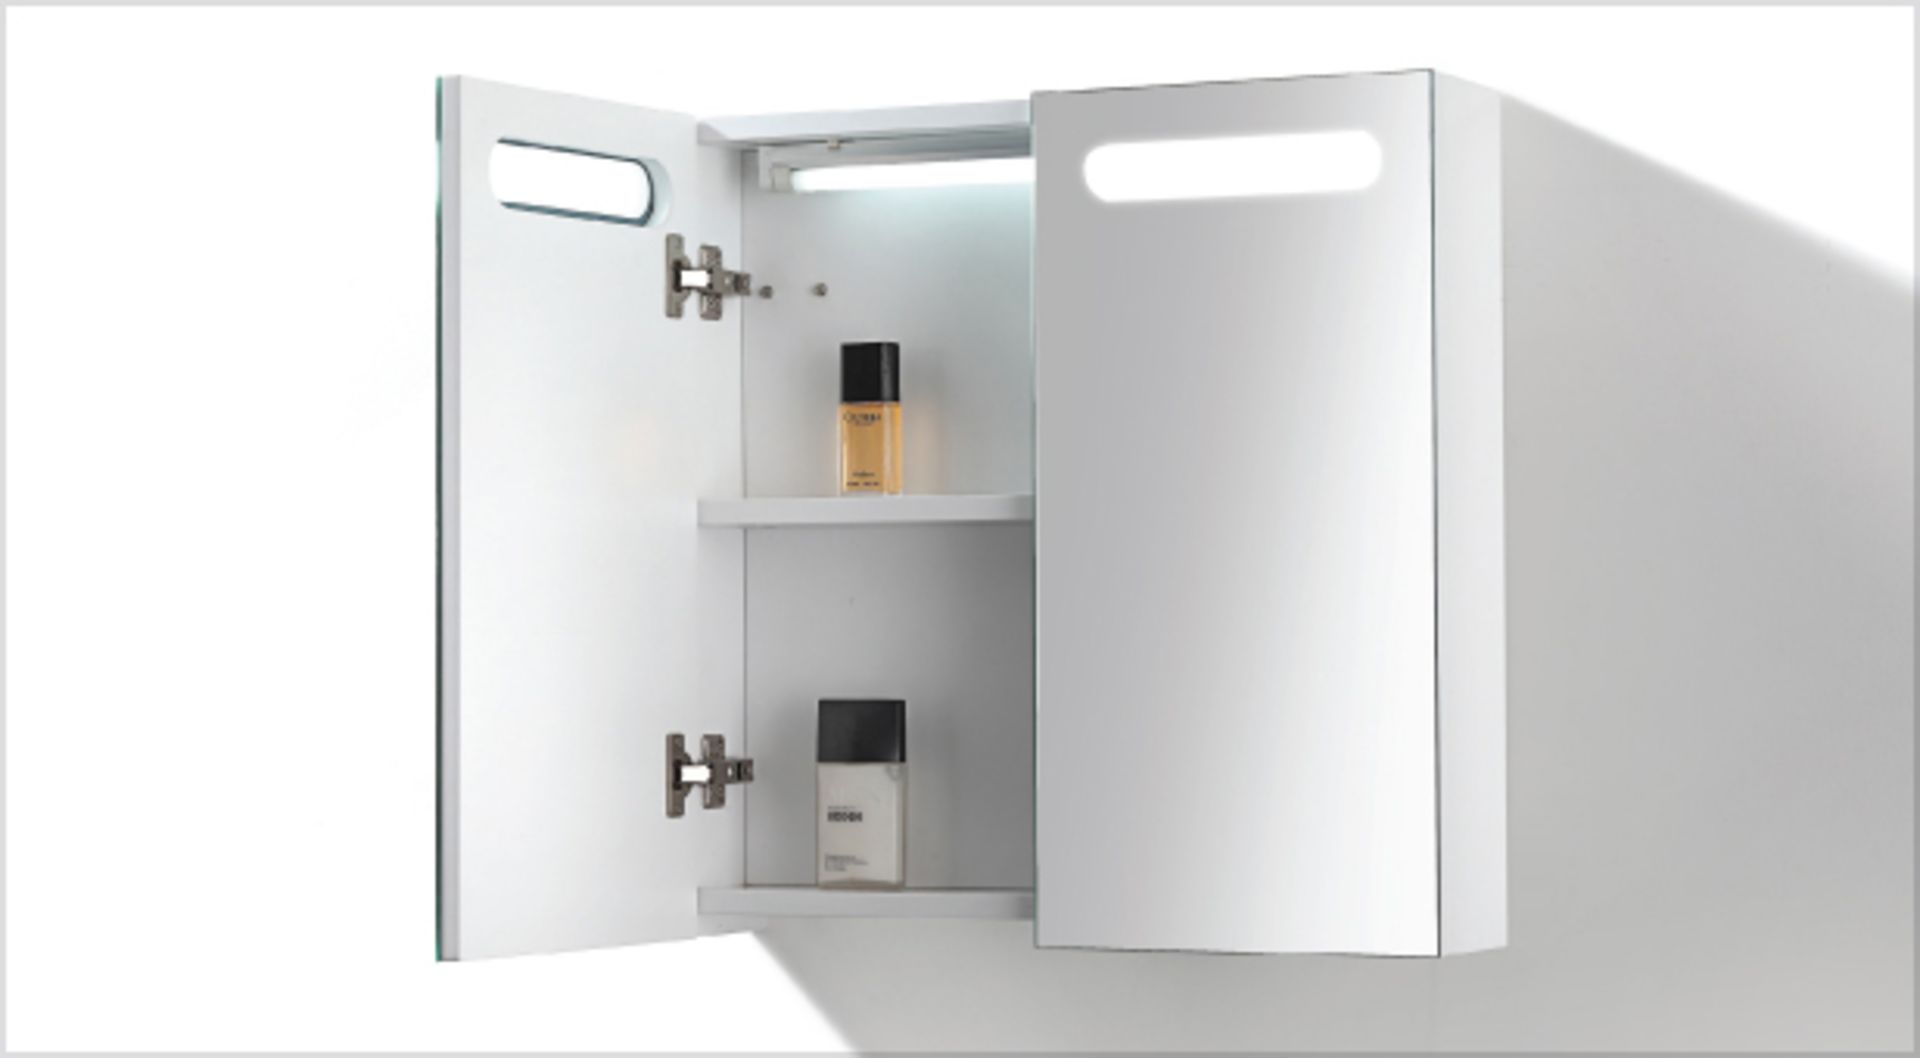 1 x Contemporary Bathroom Eden Mirror Cabinet 80